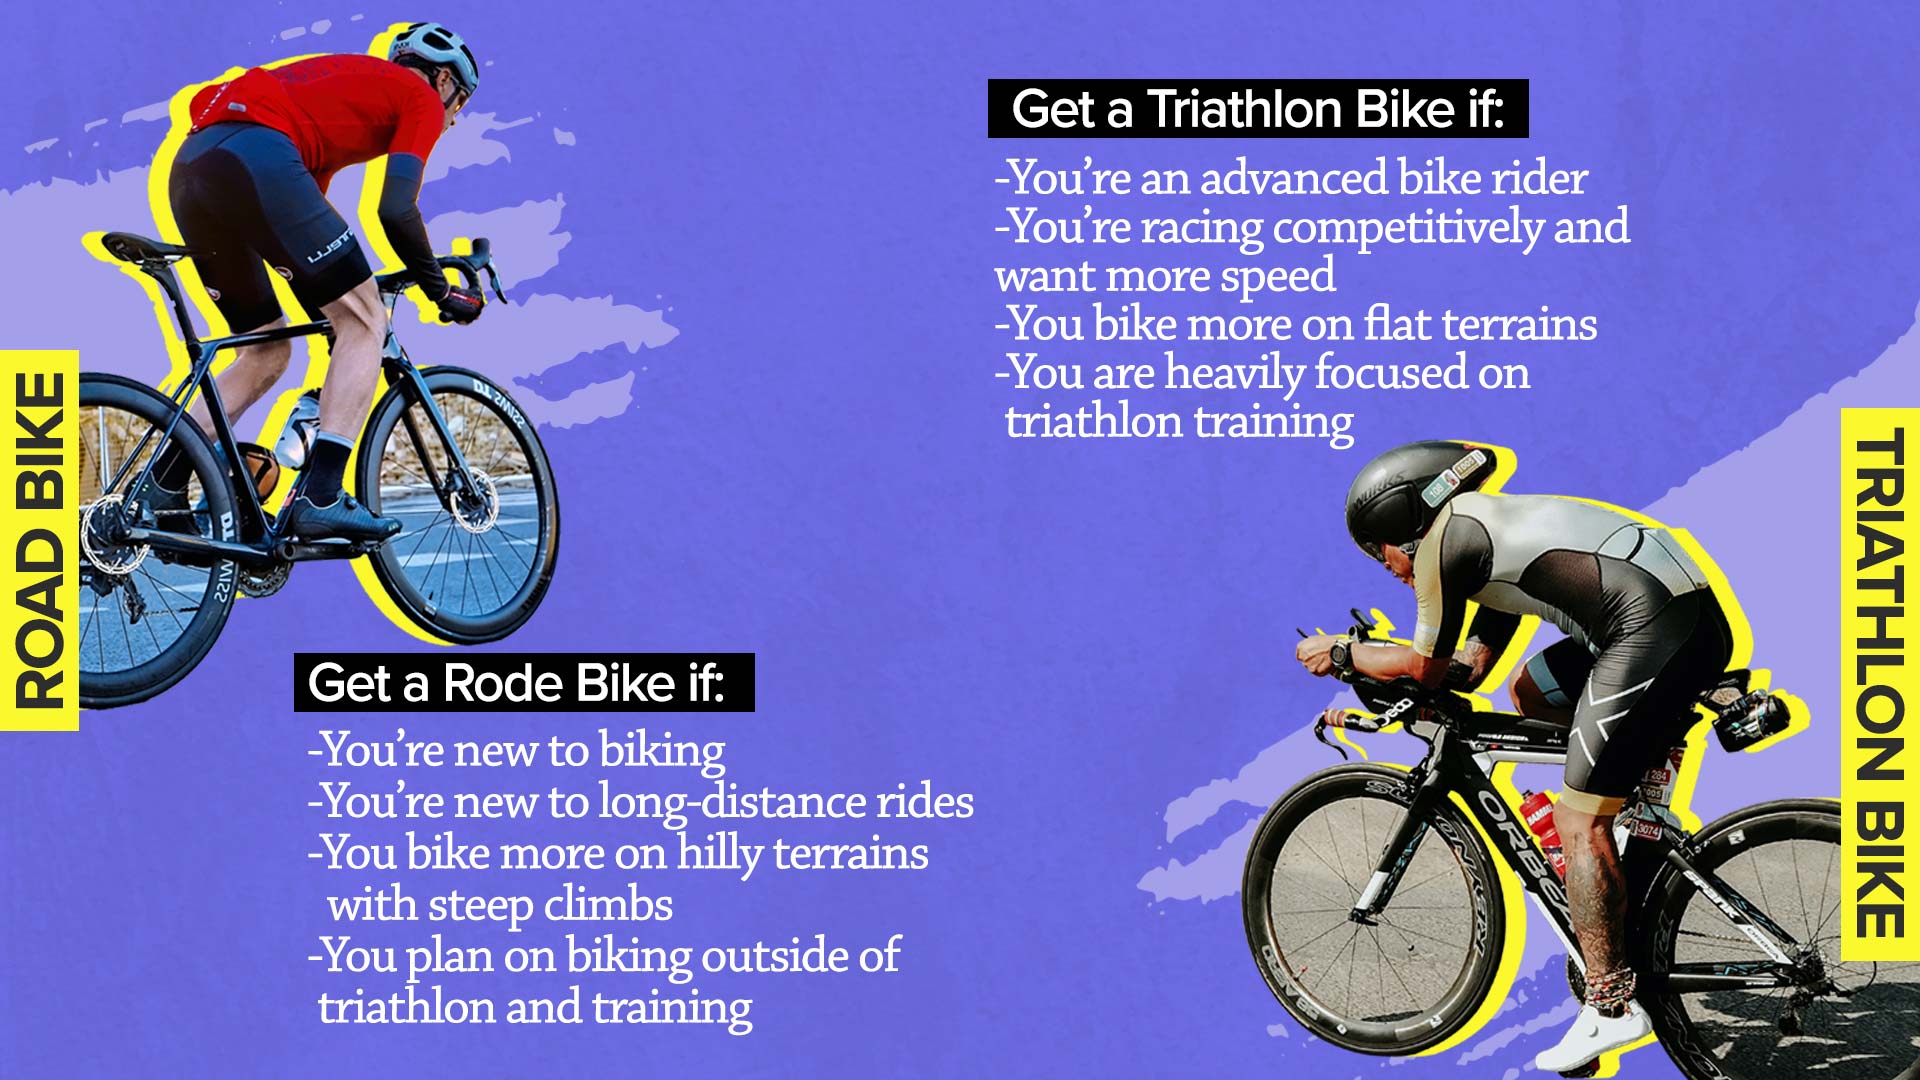 Choosing between a road bike and a triathlon bike